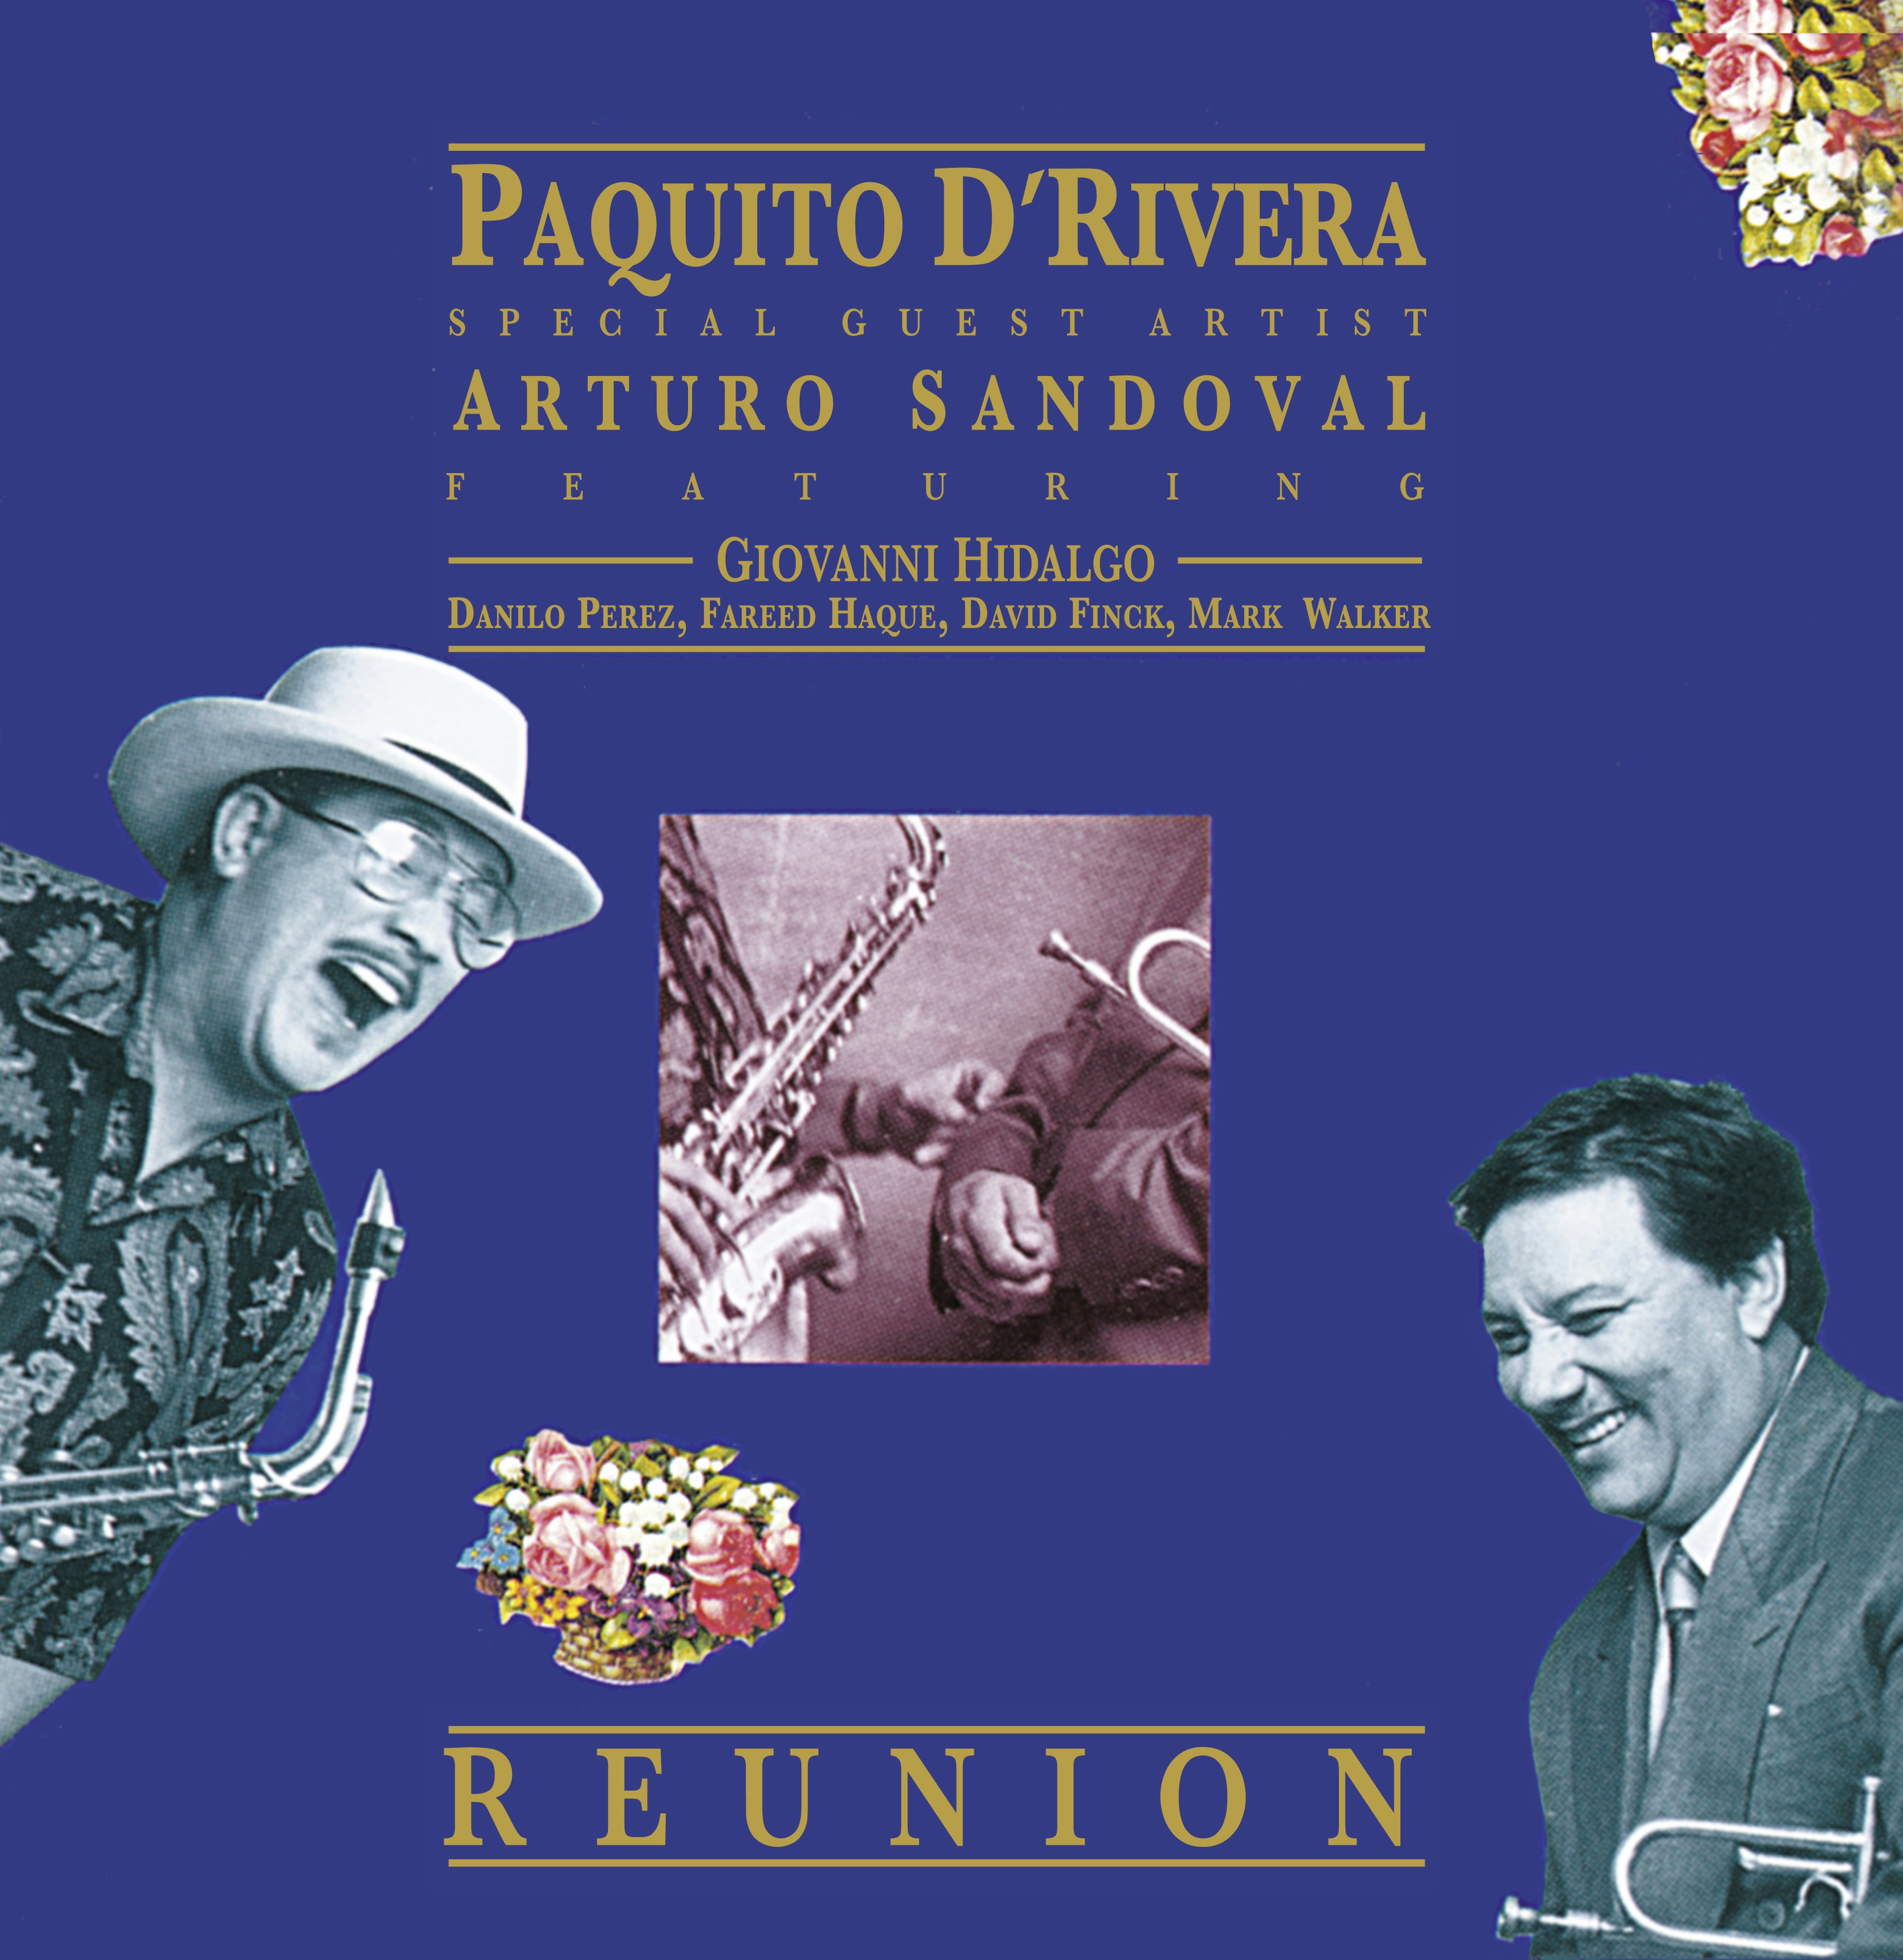 Album artwork for Album artwork for Reunion by Paquito d´Rivera and Arturo Sandoval by Reunion - Paquito d´Rivera and Arturo Sandoval